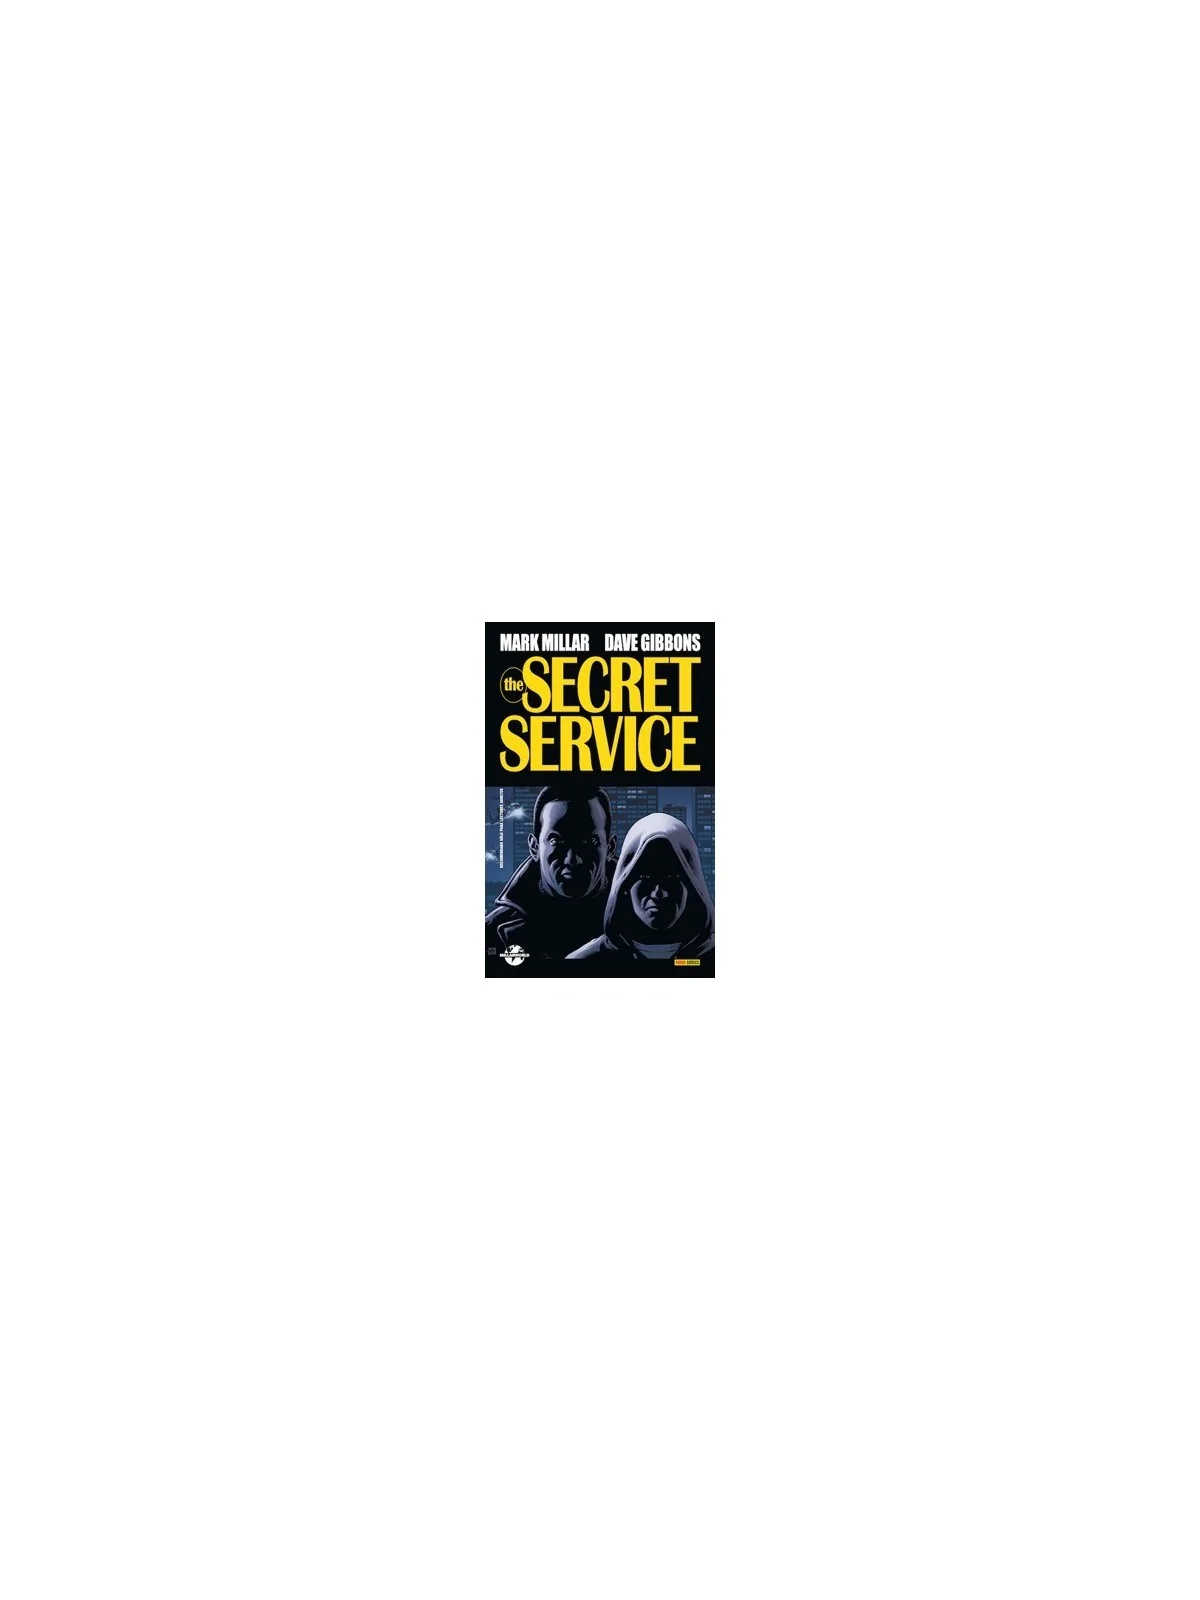 Comprar Kingsman: The Secret Service 01 barato al mejor precio 17,10 €